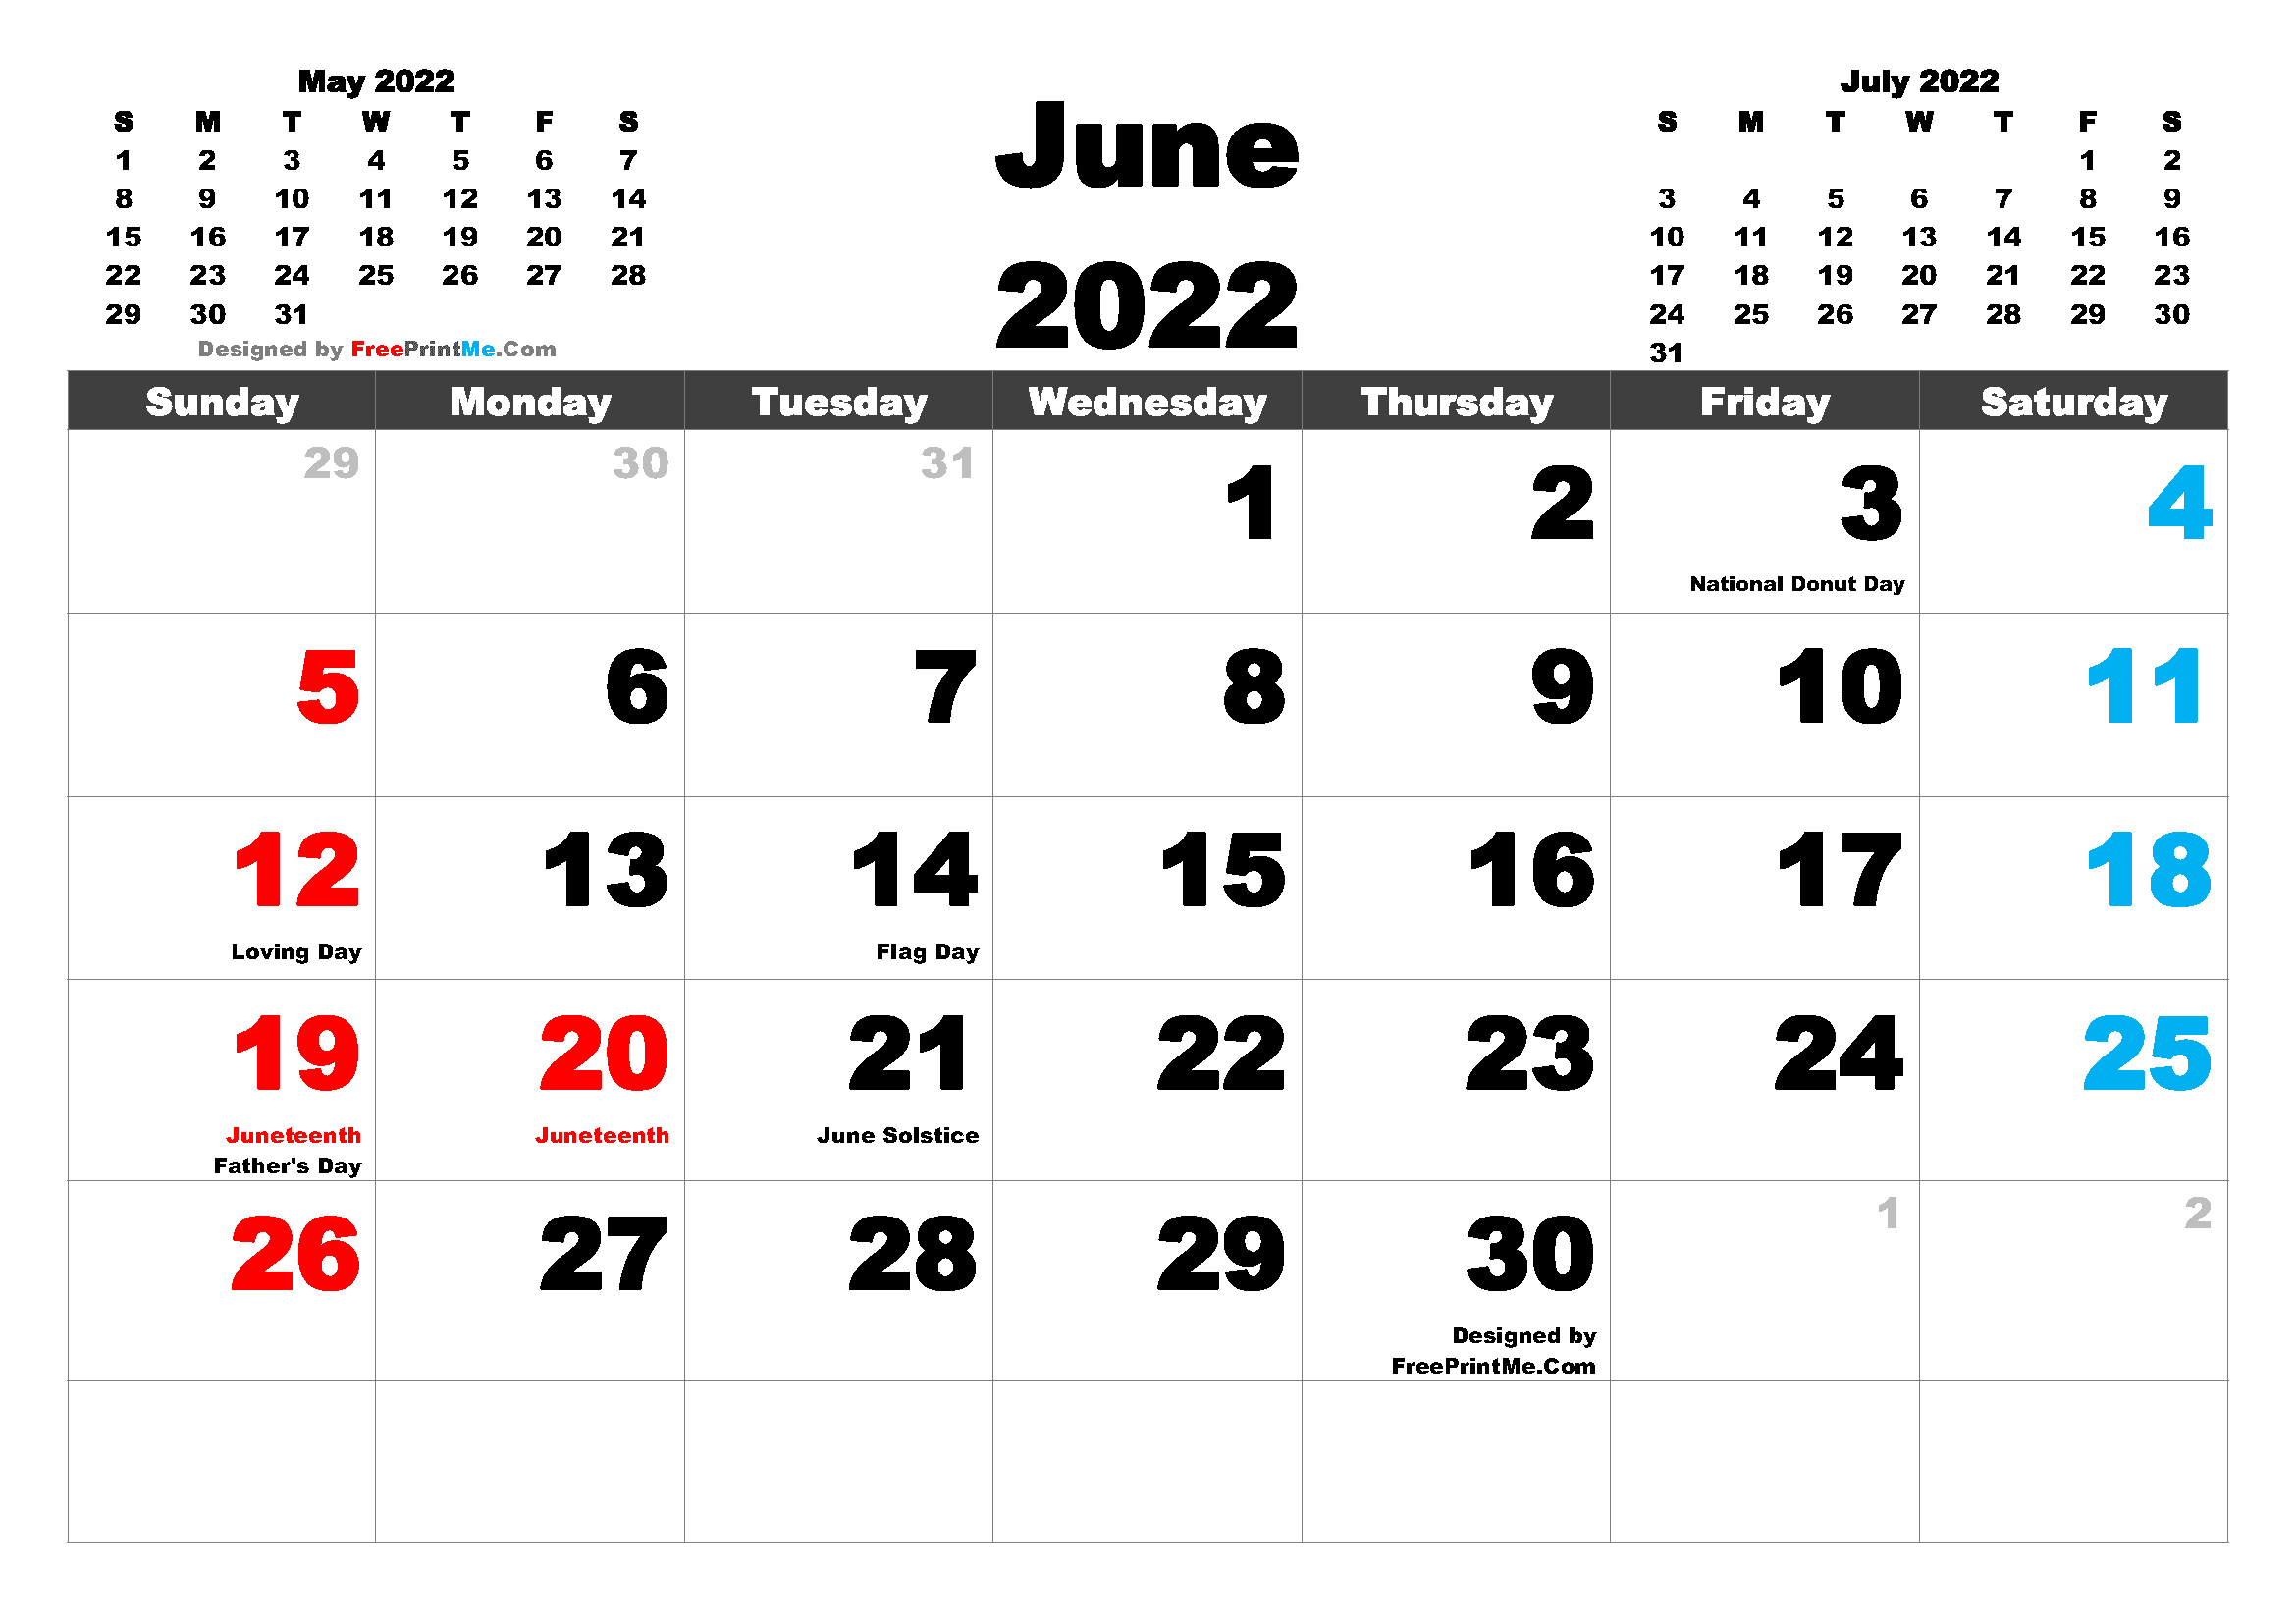 Free Printable June 2022 Calendar Free Printable June 2022 Calendar Pdf And Image